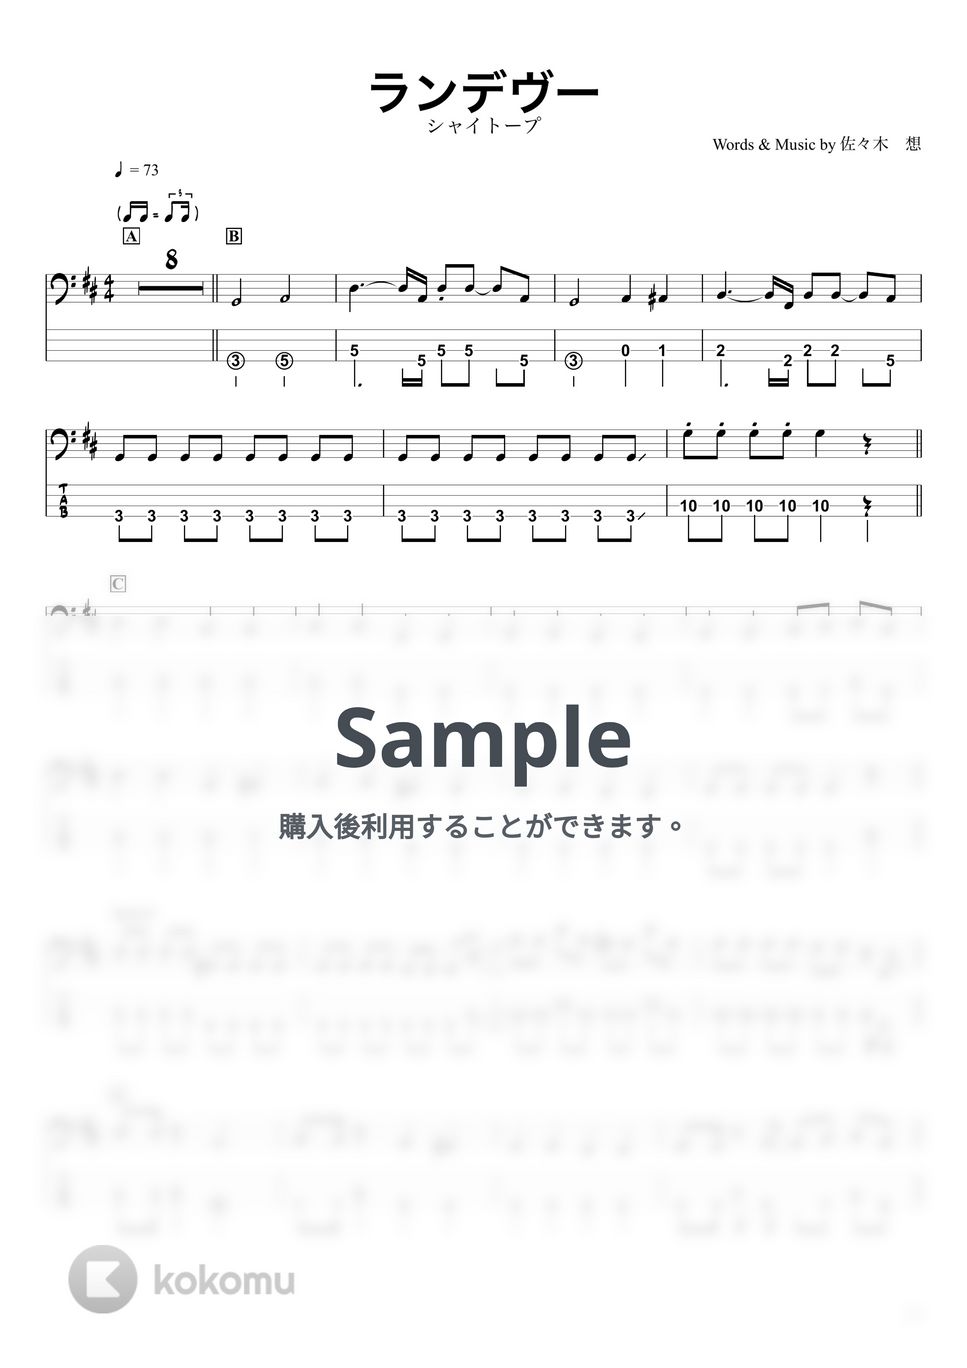 シャイトープ - ランデヴー (ベースTAB譜☆4弦ベース対応) by swbass